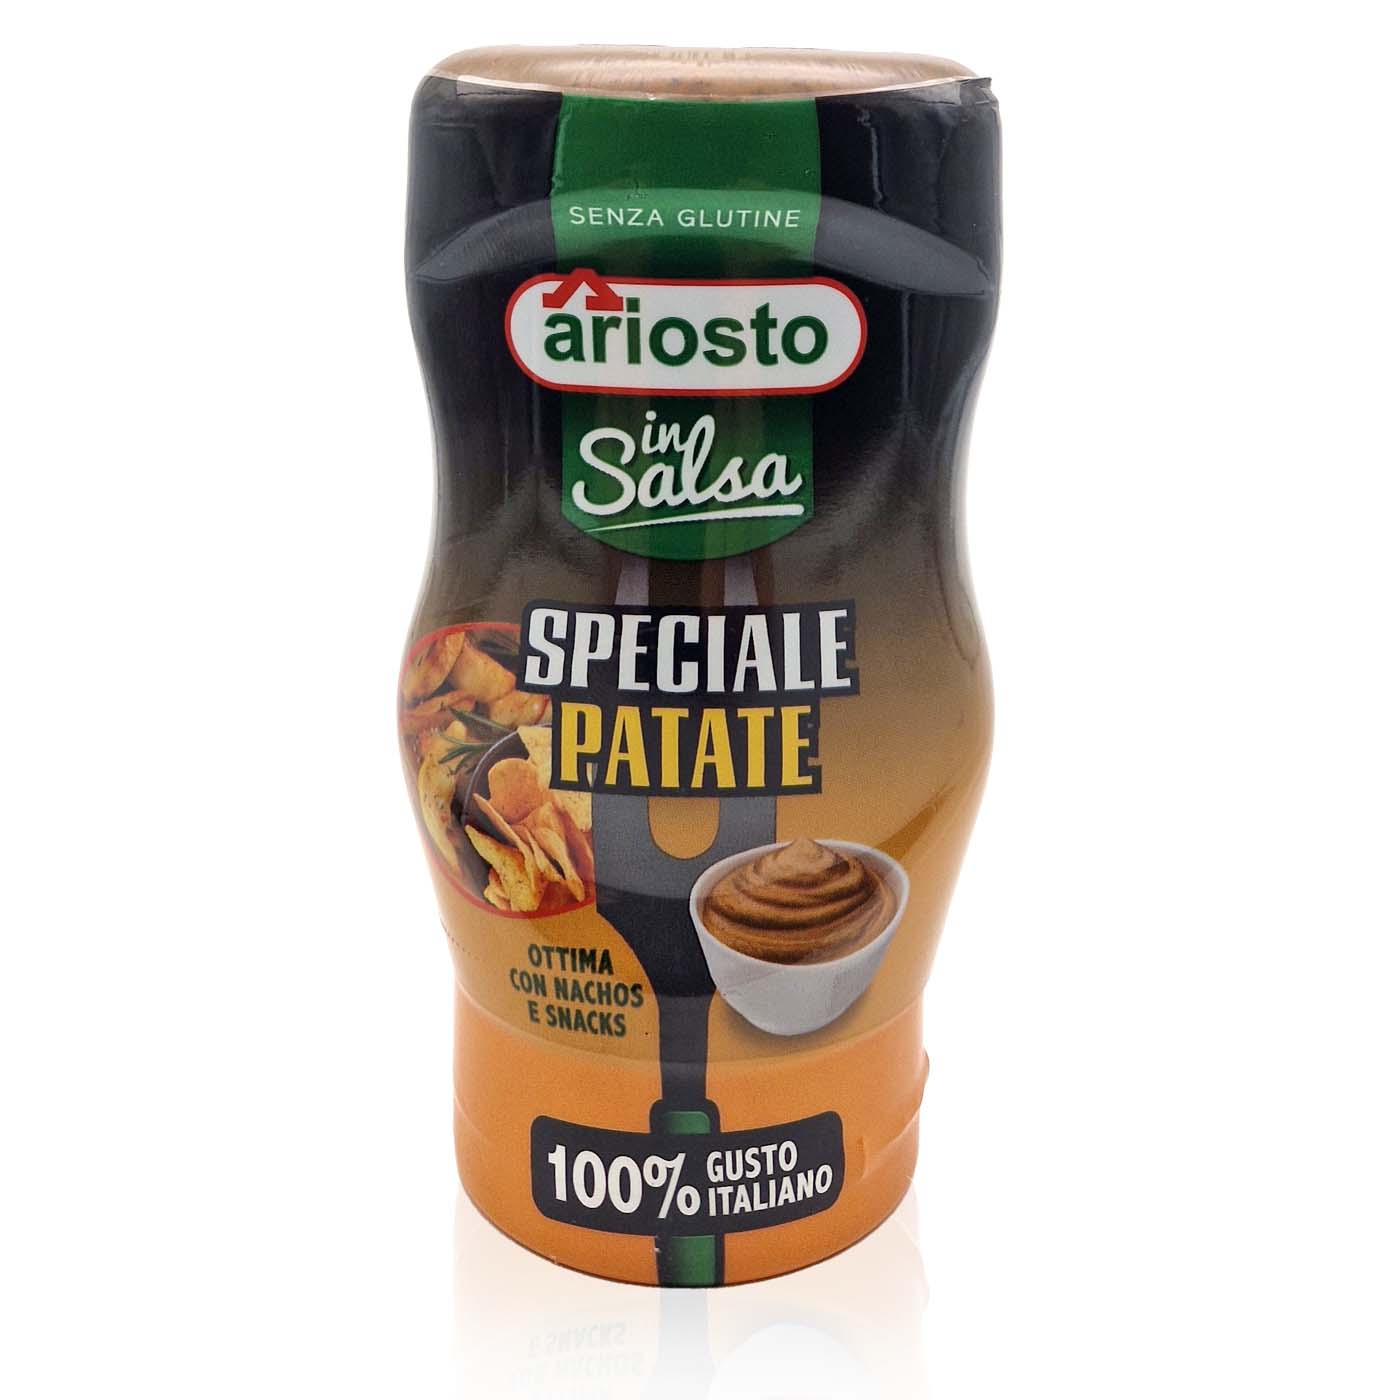 ARIOSTO Insalsa Patate – Salsa - Soße Speciale Kartoffel - 0,305kg - italienisch - einkaufen.de